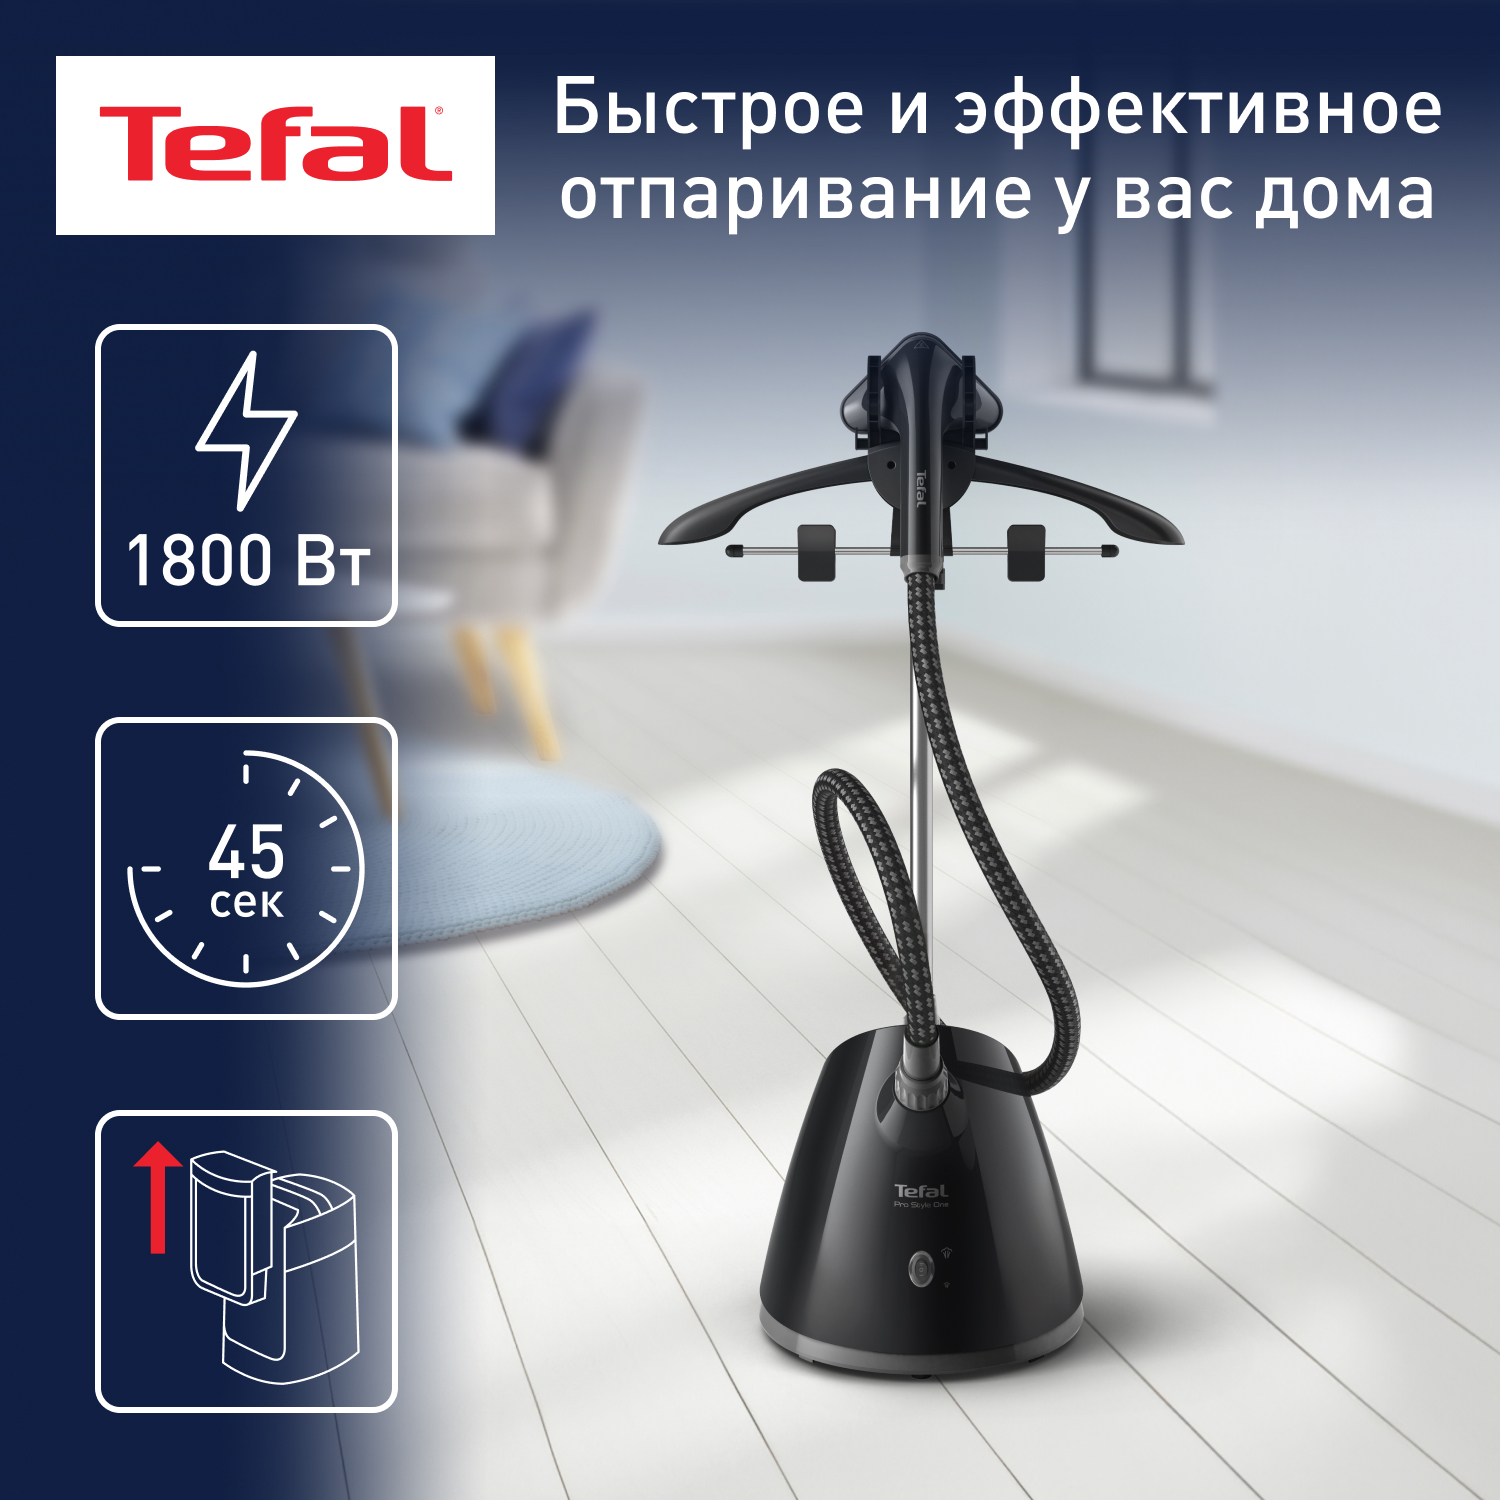 Вертикальный отпариватель Tefal IT2461E0, купить в Москве, цены в интернет-магазинах на Мегамаркет